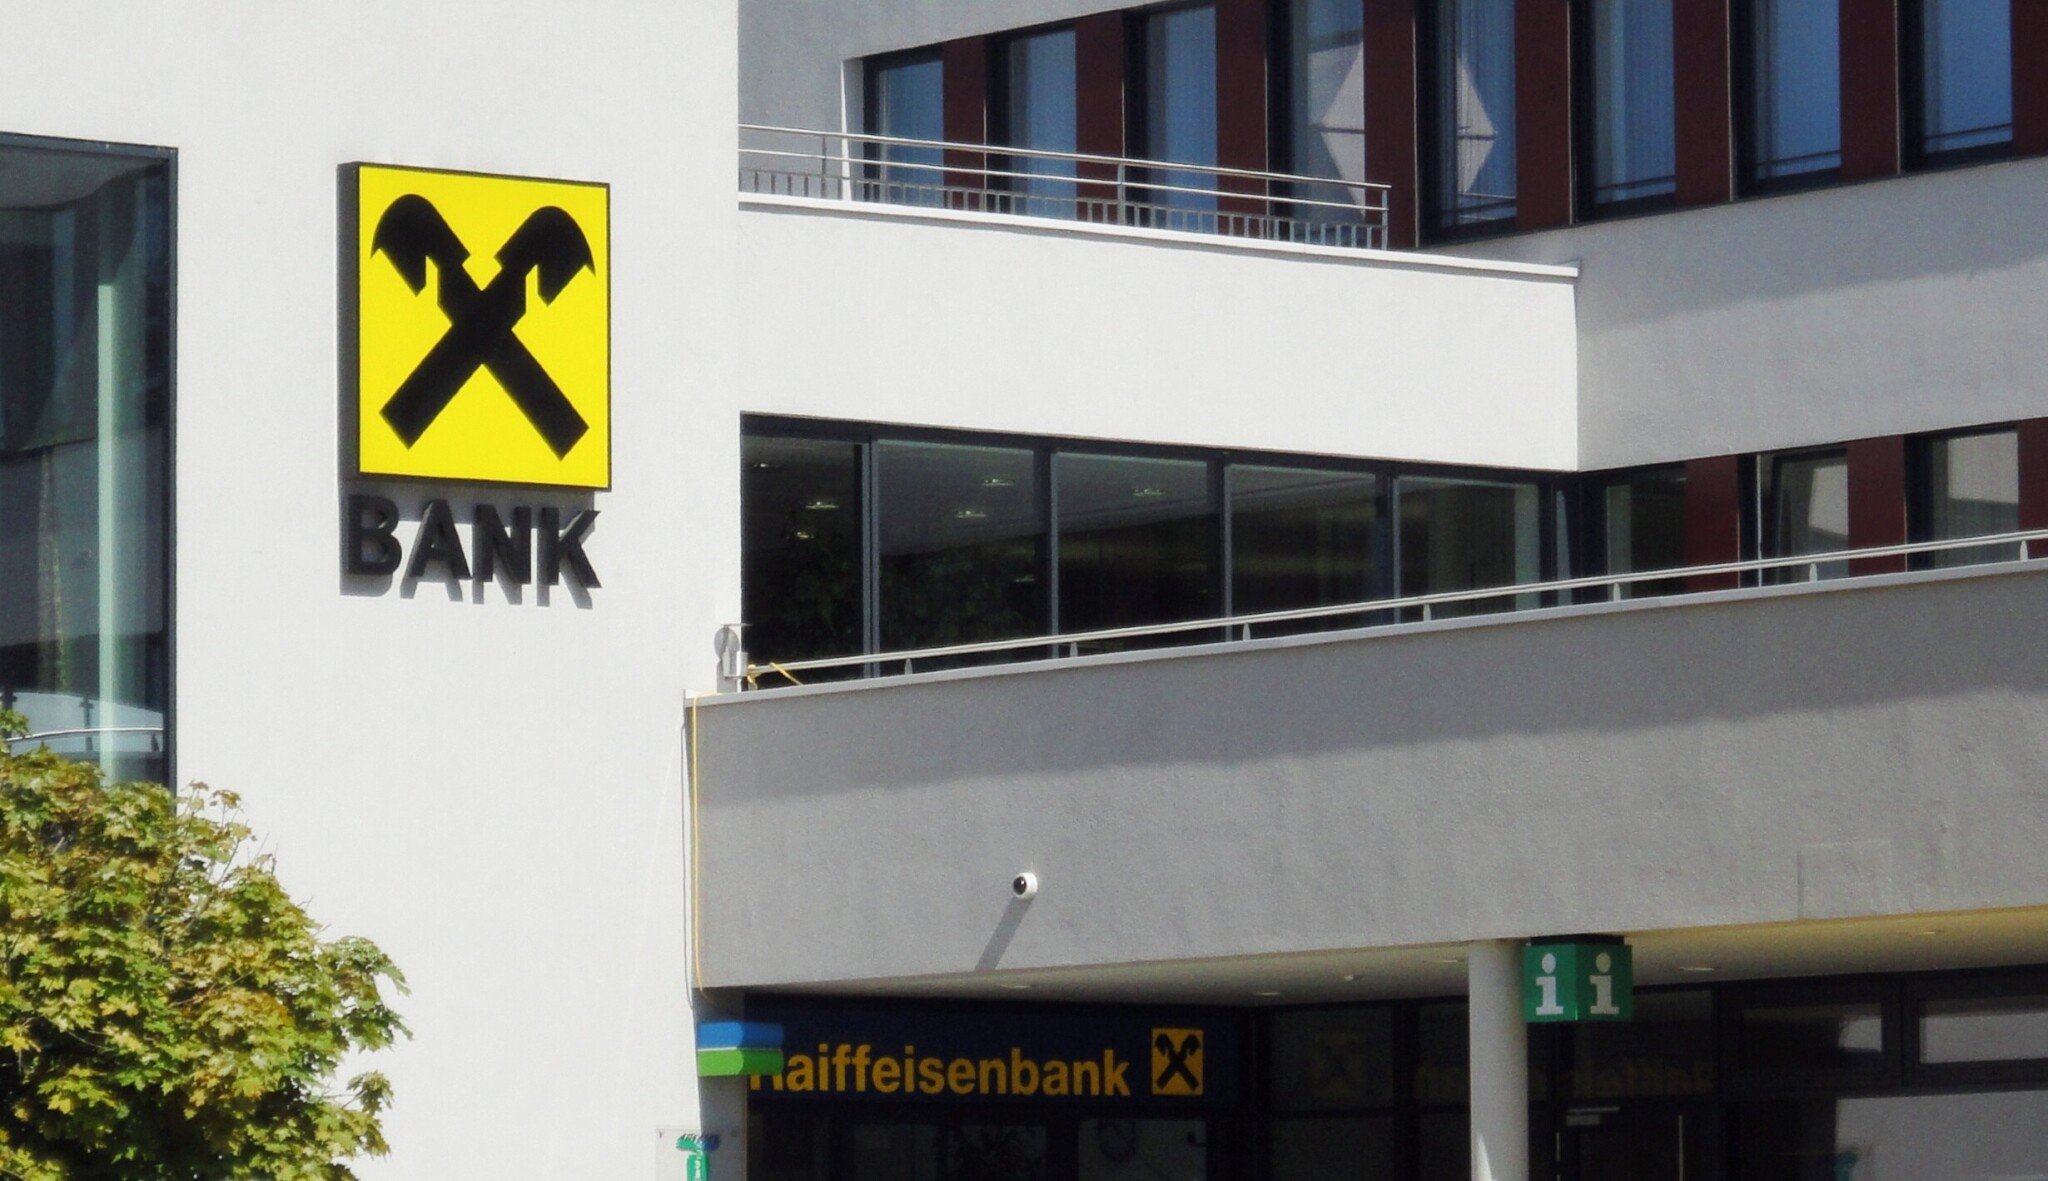 Raiffeisenbank klesl čistý zisk za první pololetí o pětinu. Aktiva rostla